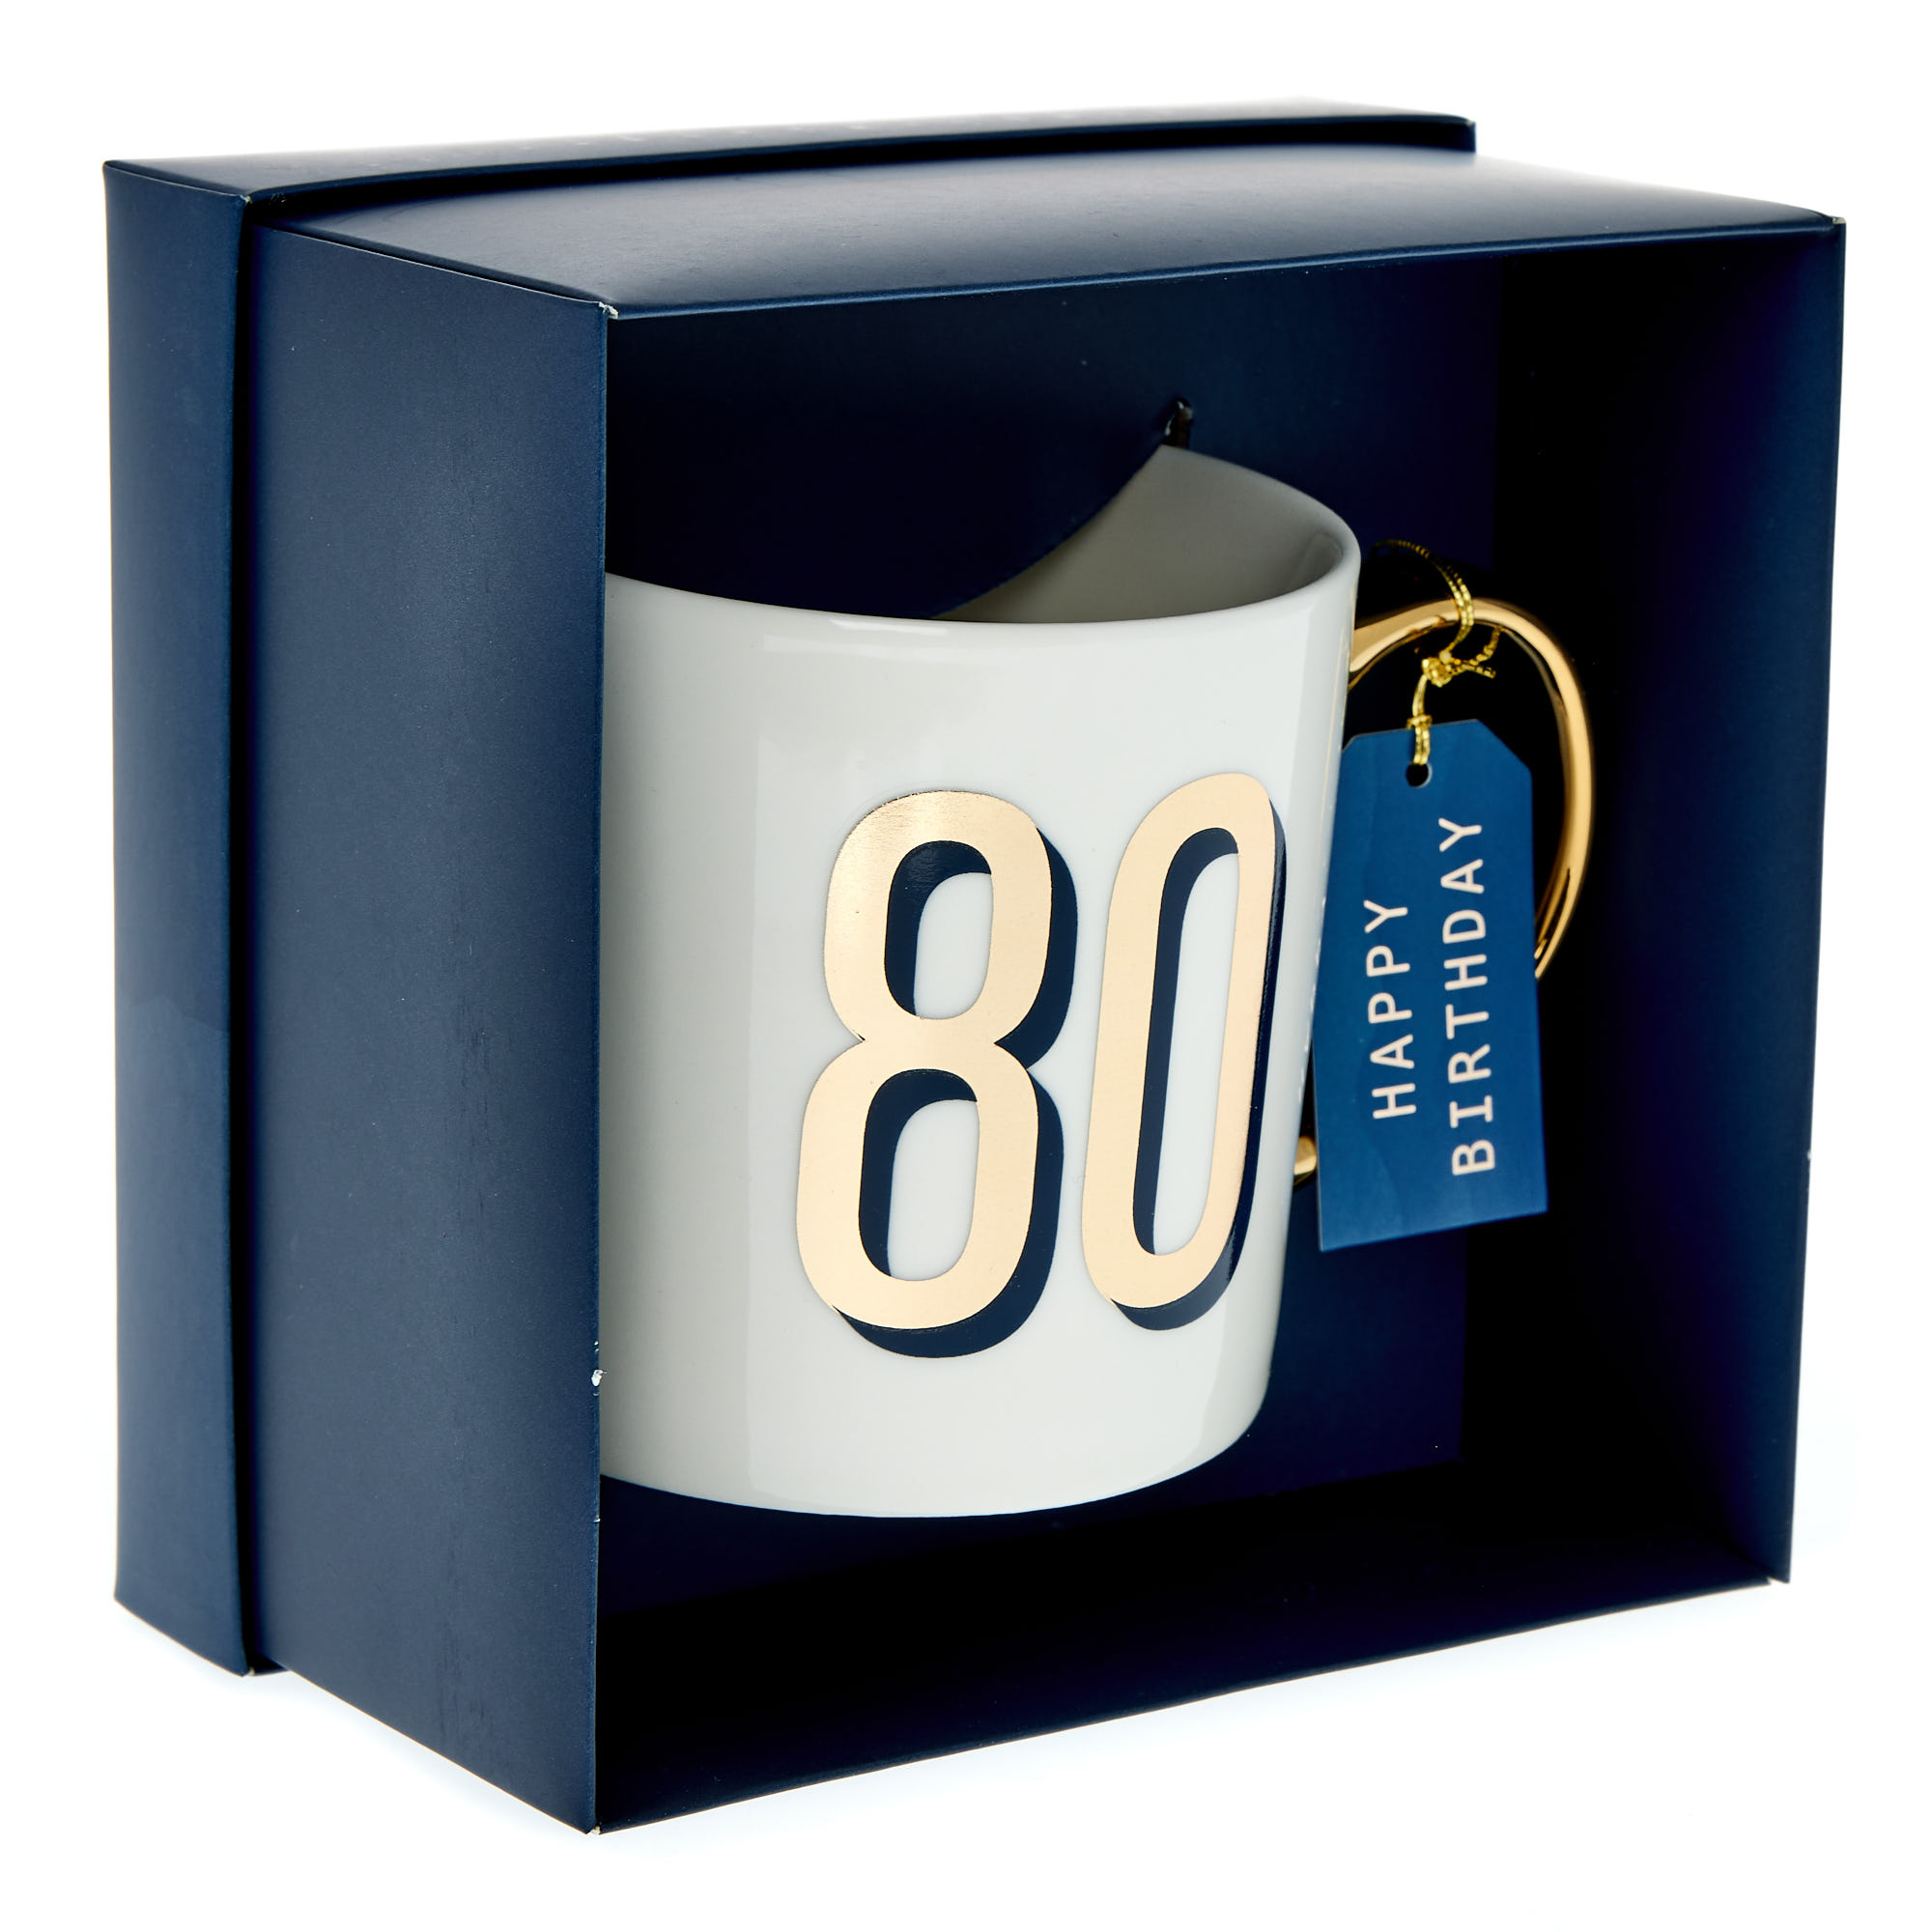 Blue & Gold 80th Birthday Mug